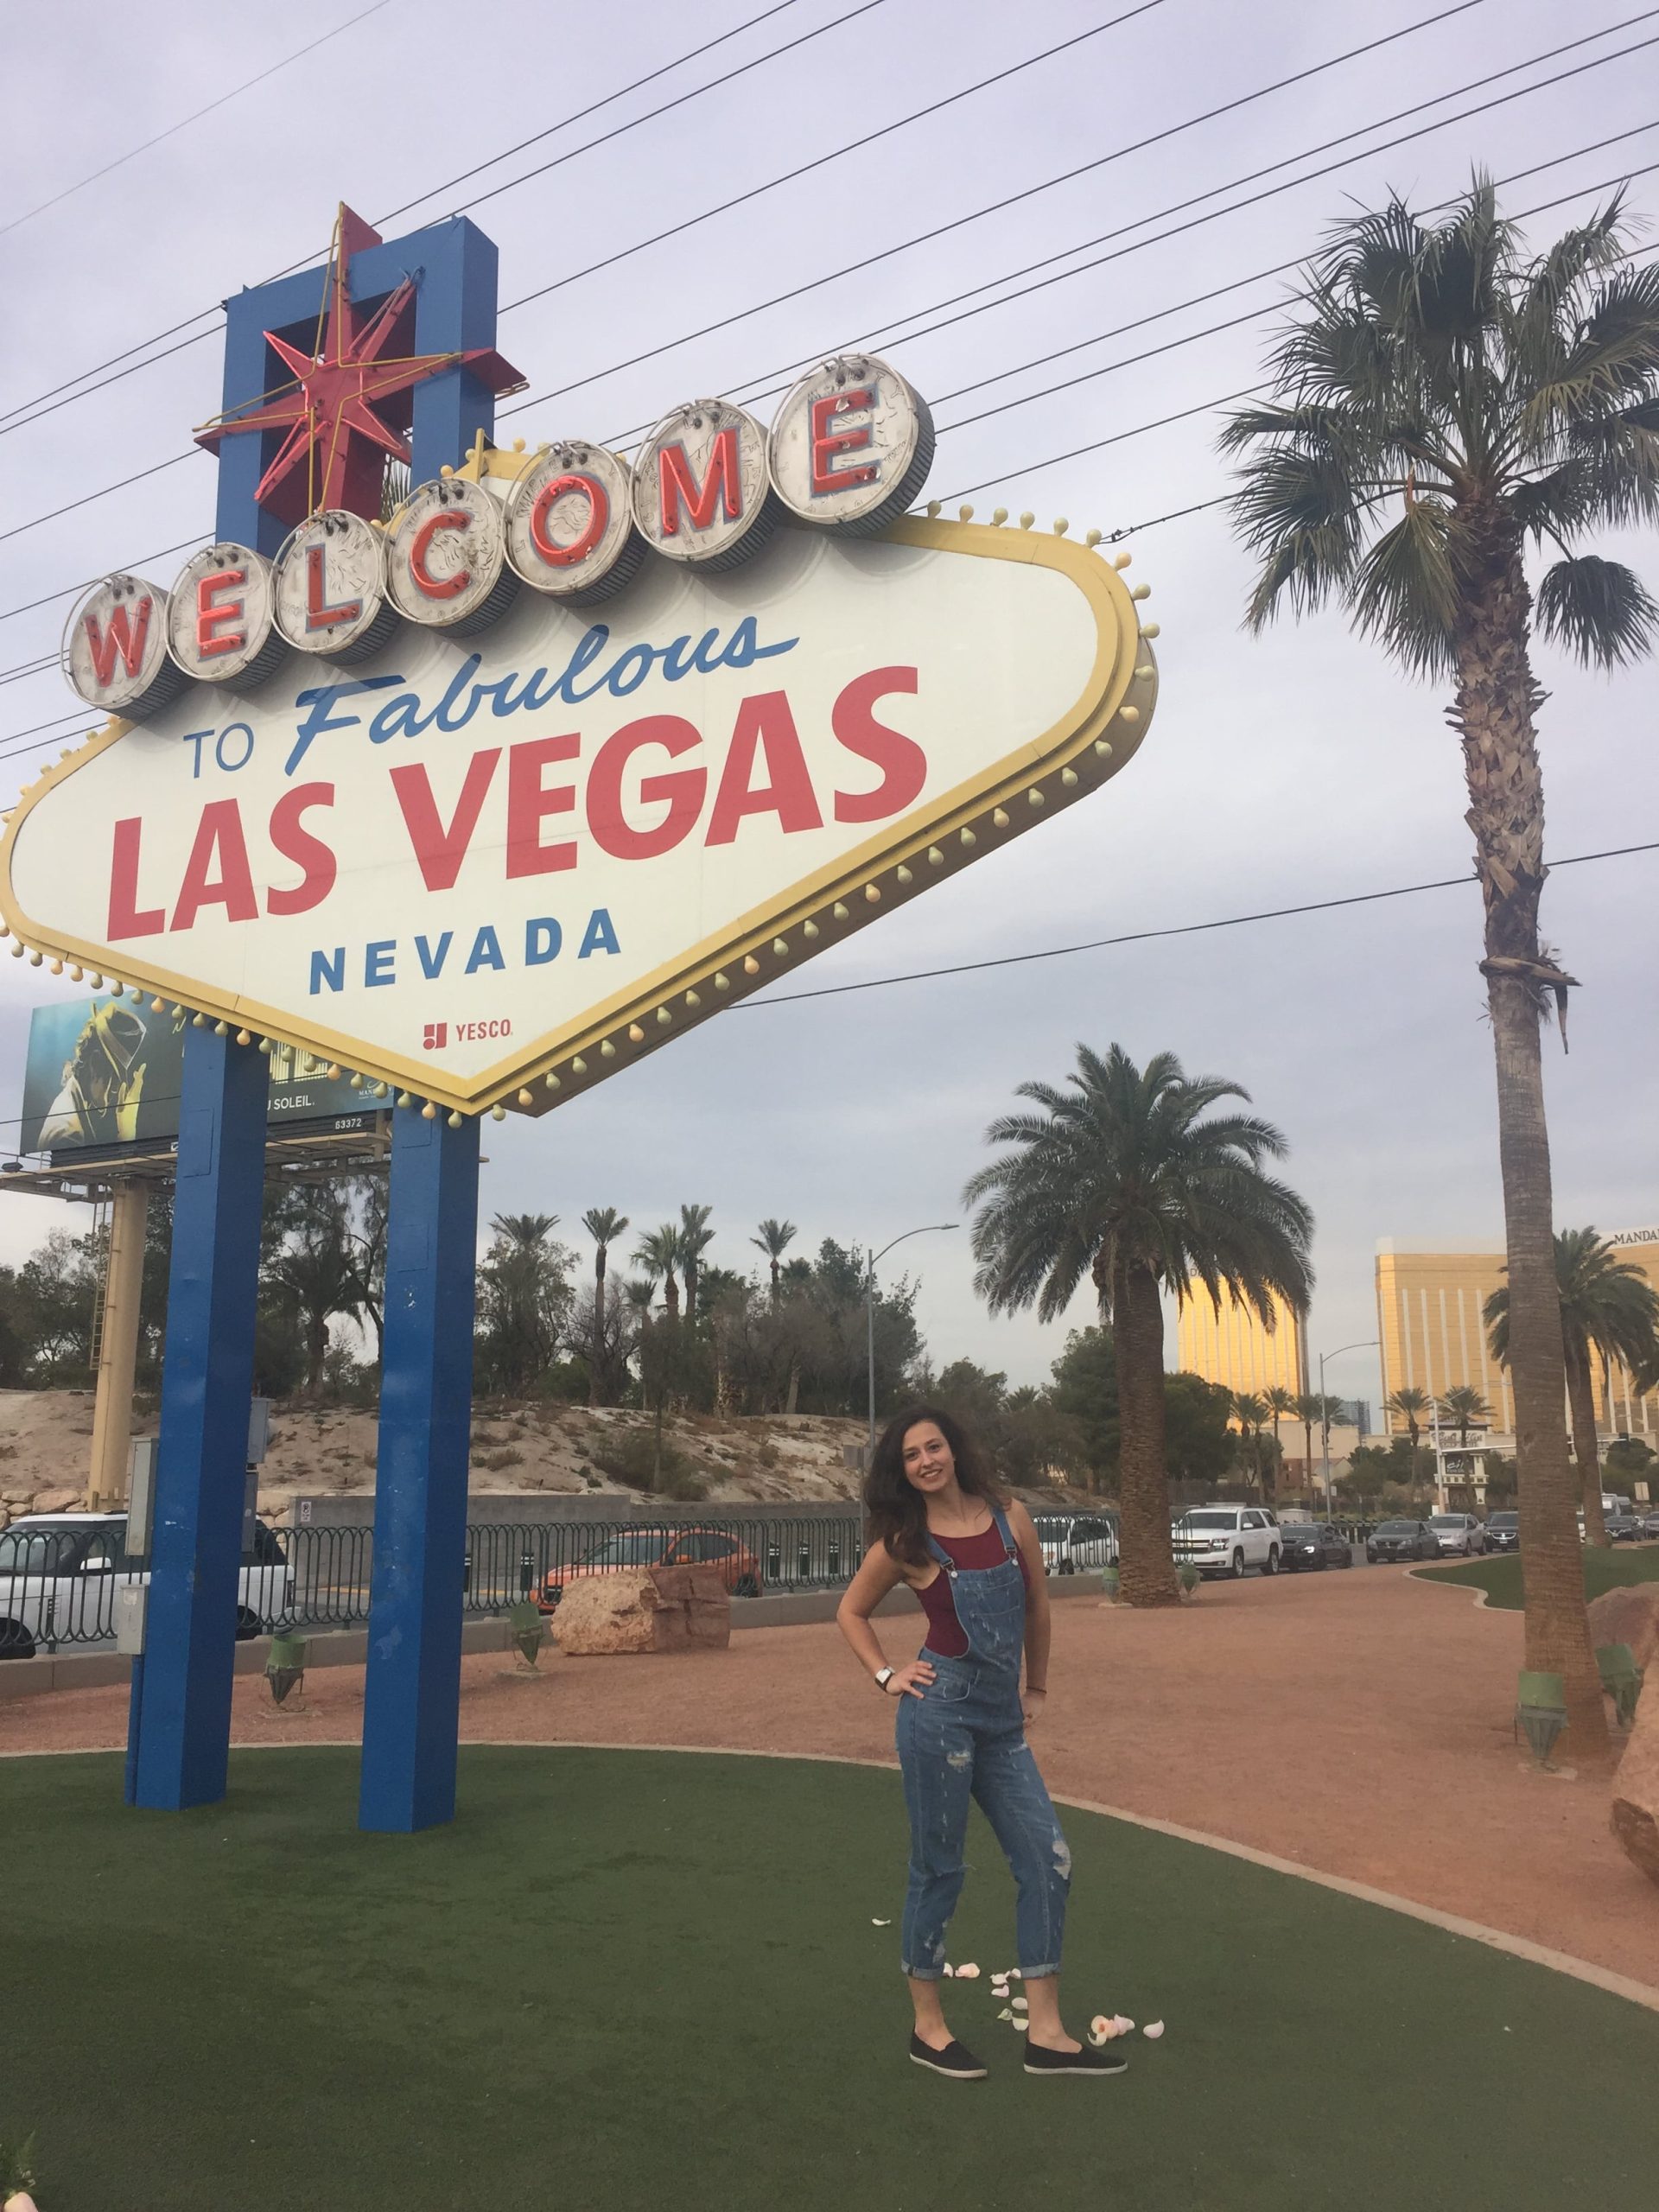 Dievča v modrom overale pózuje pred tabuľou Welcome to Fabulous Las Vegas.